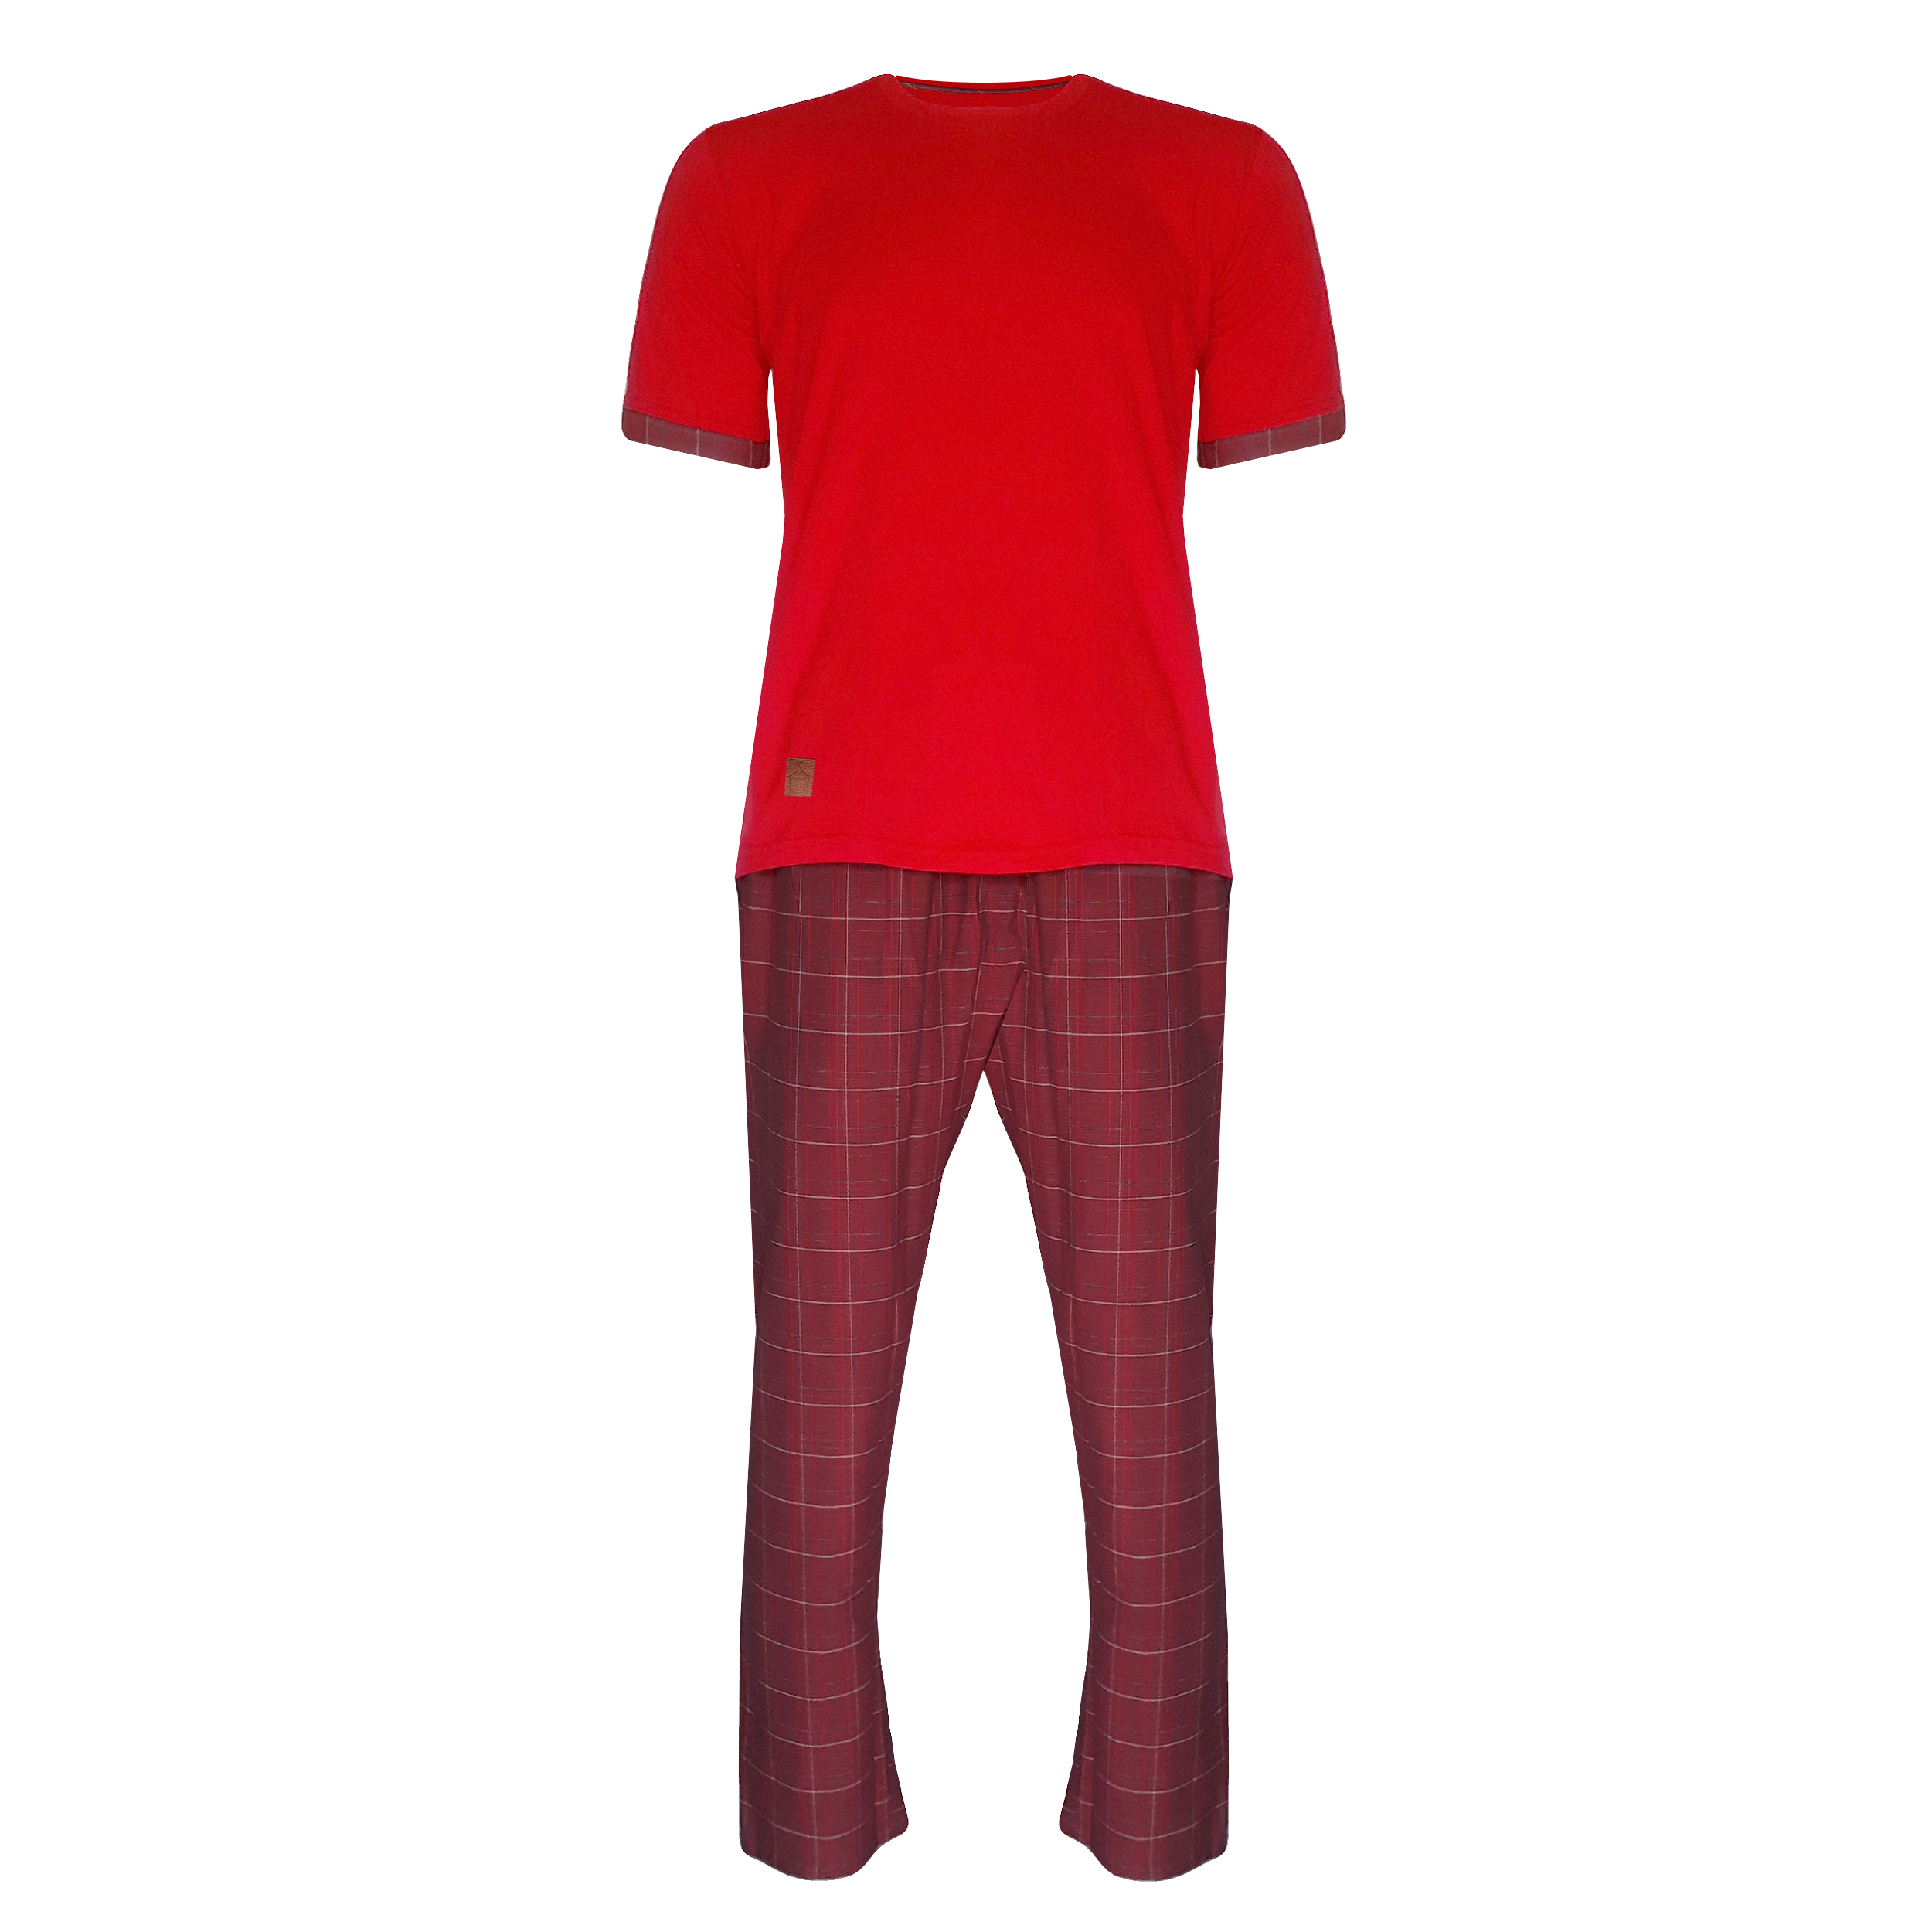 ست تی شرت و شلوار لباس خونه مردانه مدل 23 کد 991101  رنگ قرمز